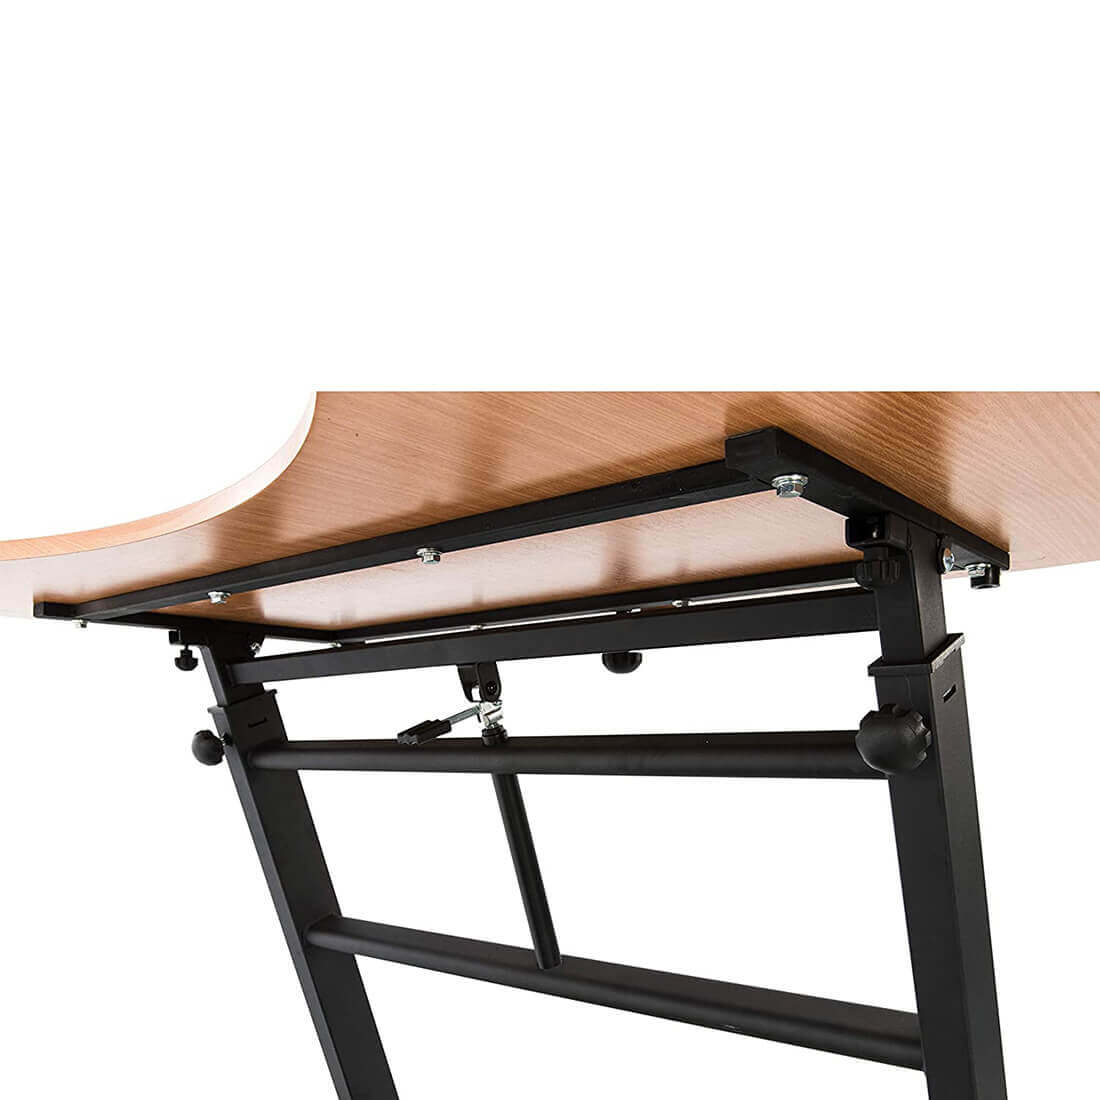 TD80 sole Desk Treadmill adjustable desk feature